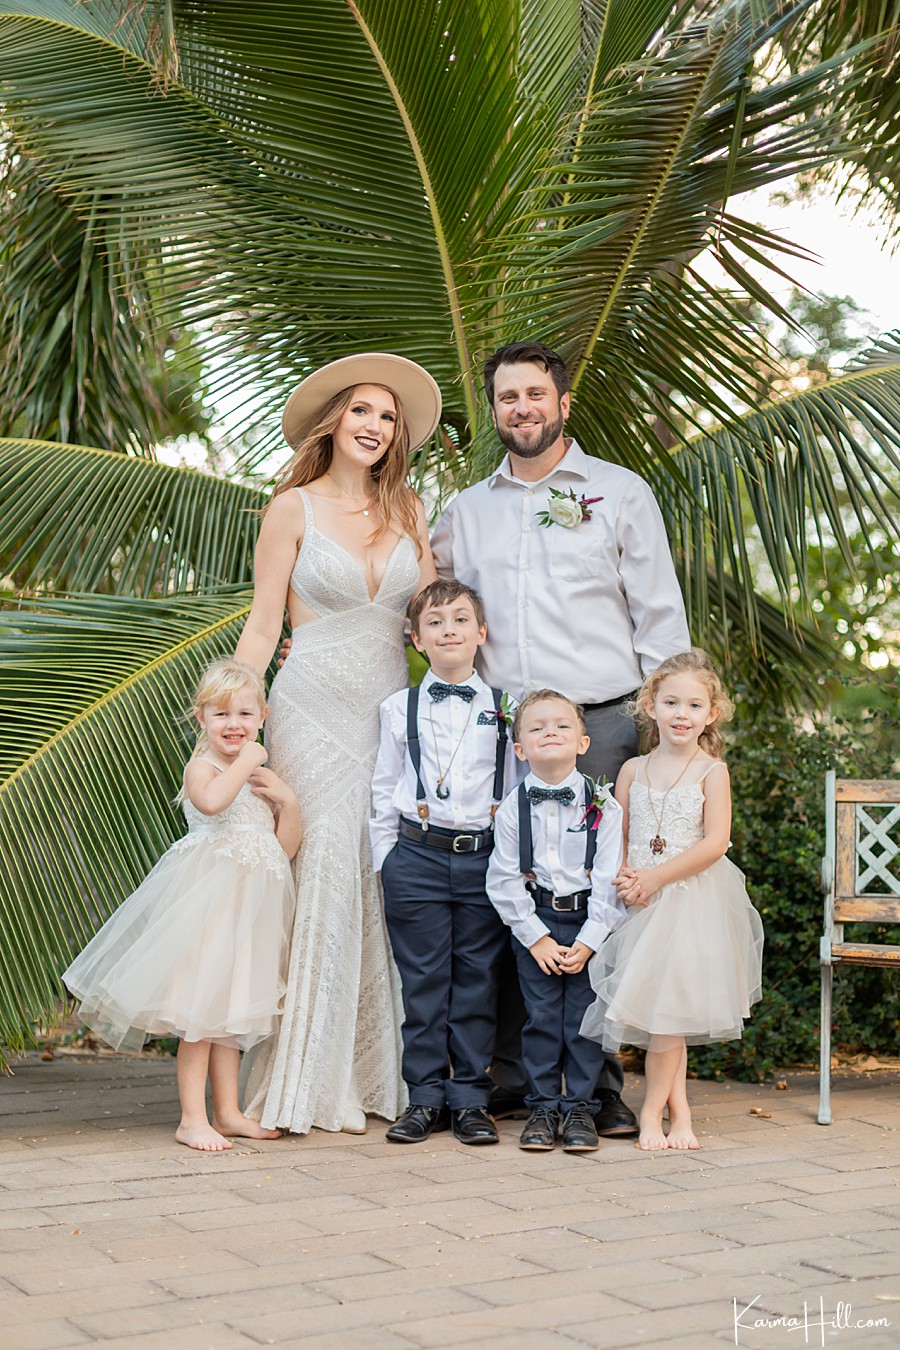 Wedding venues on Maui
